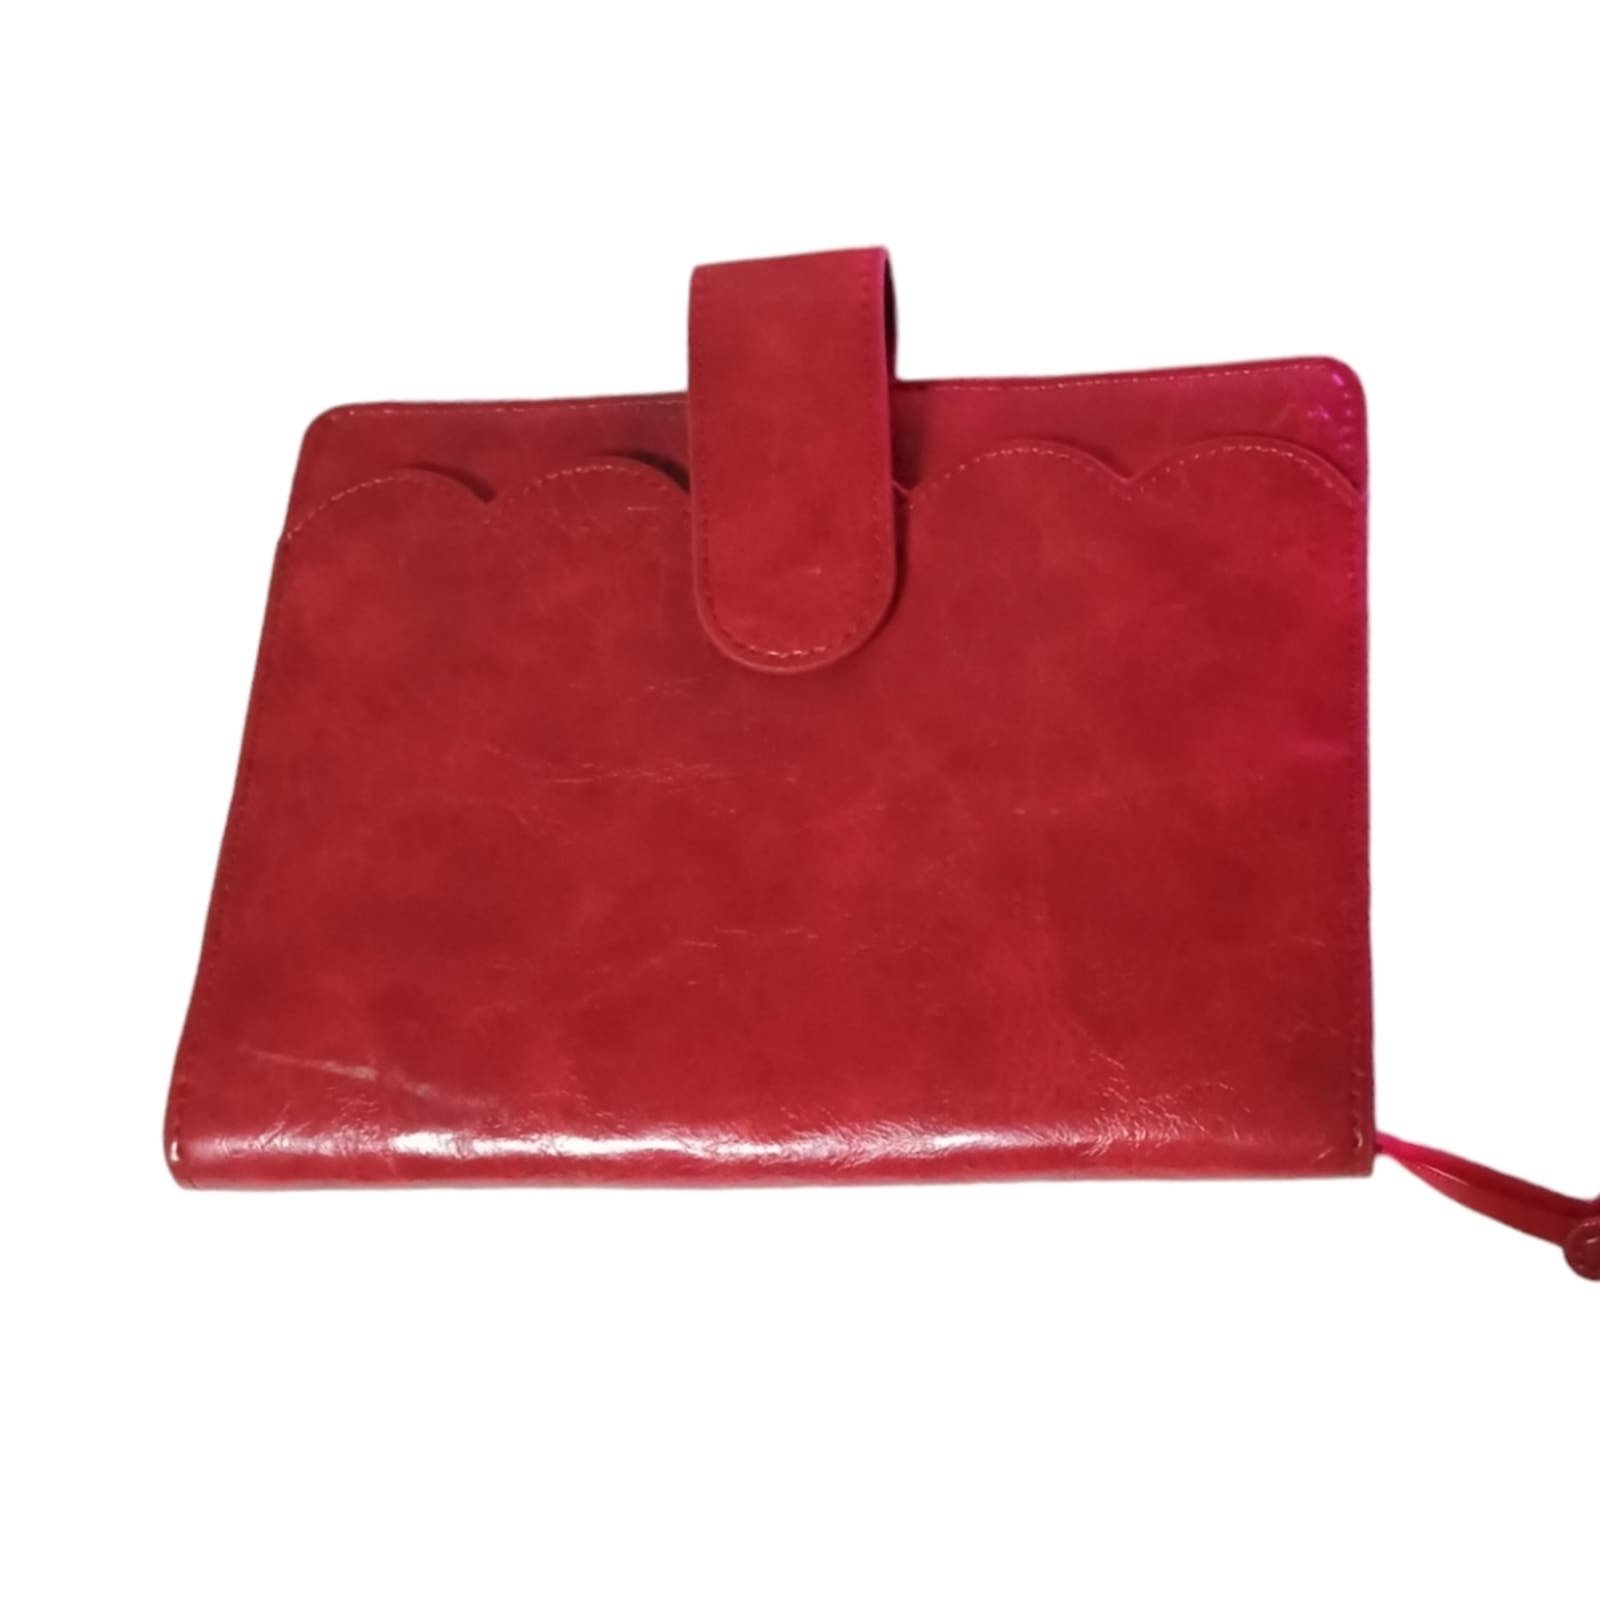 Aura Estella Red Scalloped Planner Cover Vegan Leather 1EVO5MTtK